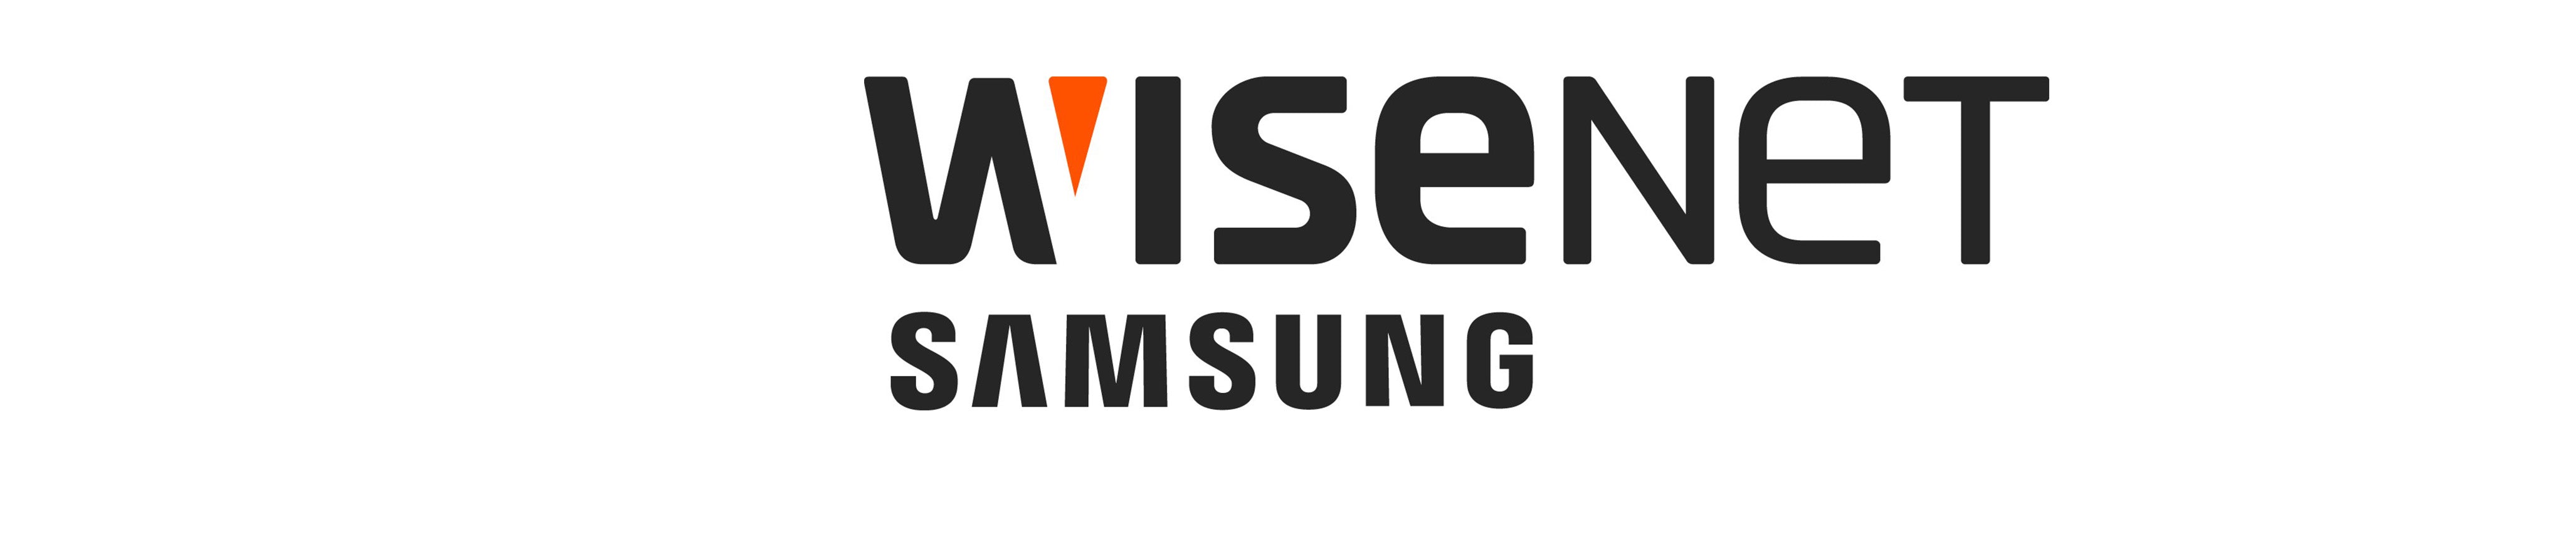 WISENET (Samsung)